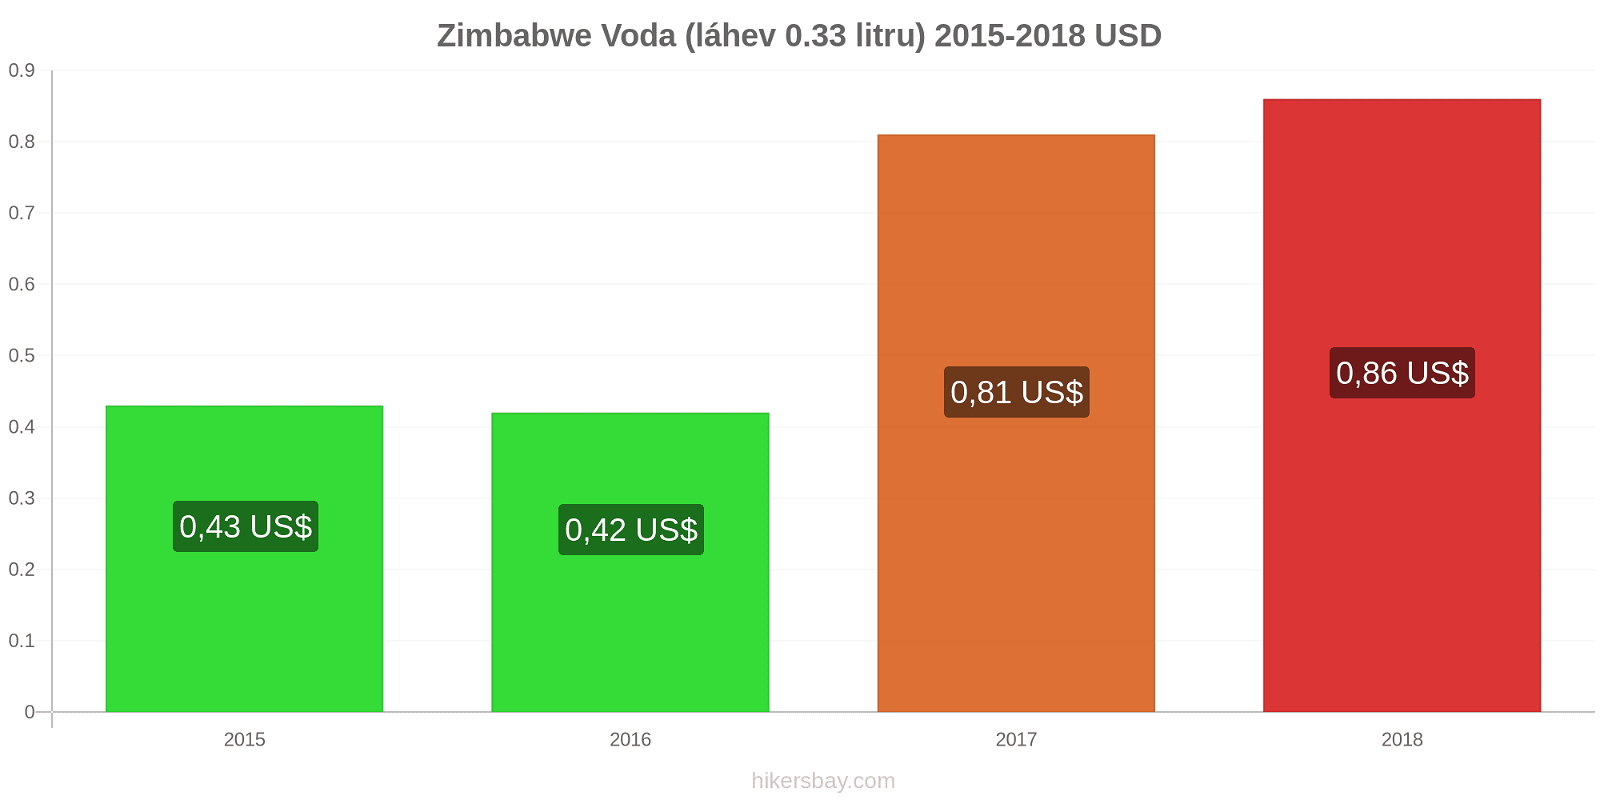 Zimbabwe změny cen Voda (láhev 0.33 litru) hikersbay.com